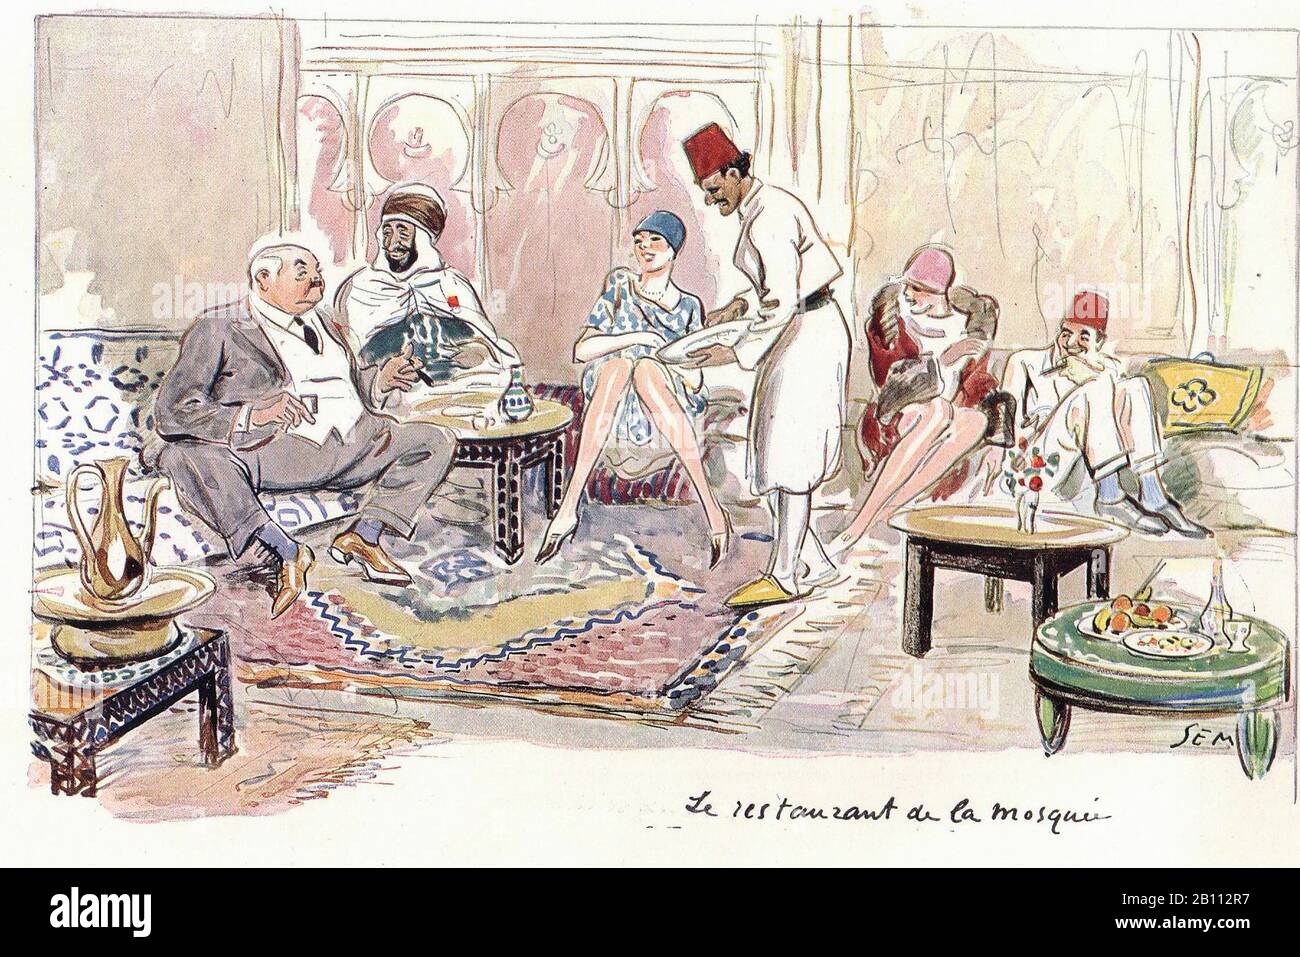 Le restaurant de la mousse - Illustration de SEM (Georges Goursat 1863–1934) Banque D'Images